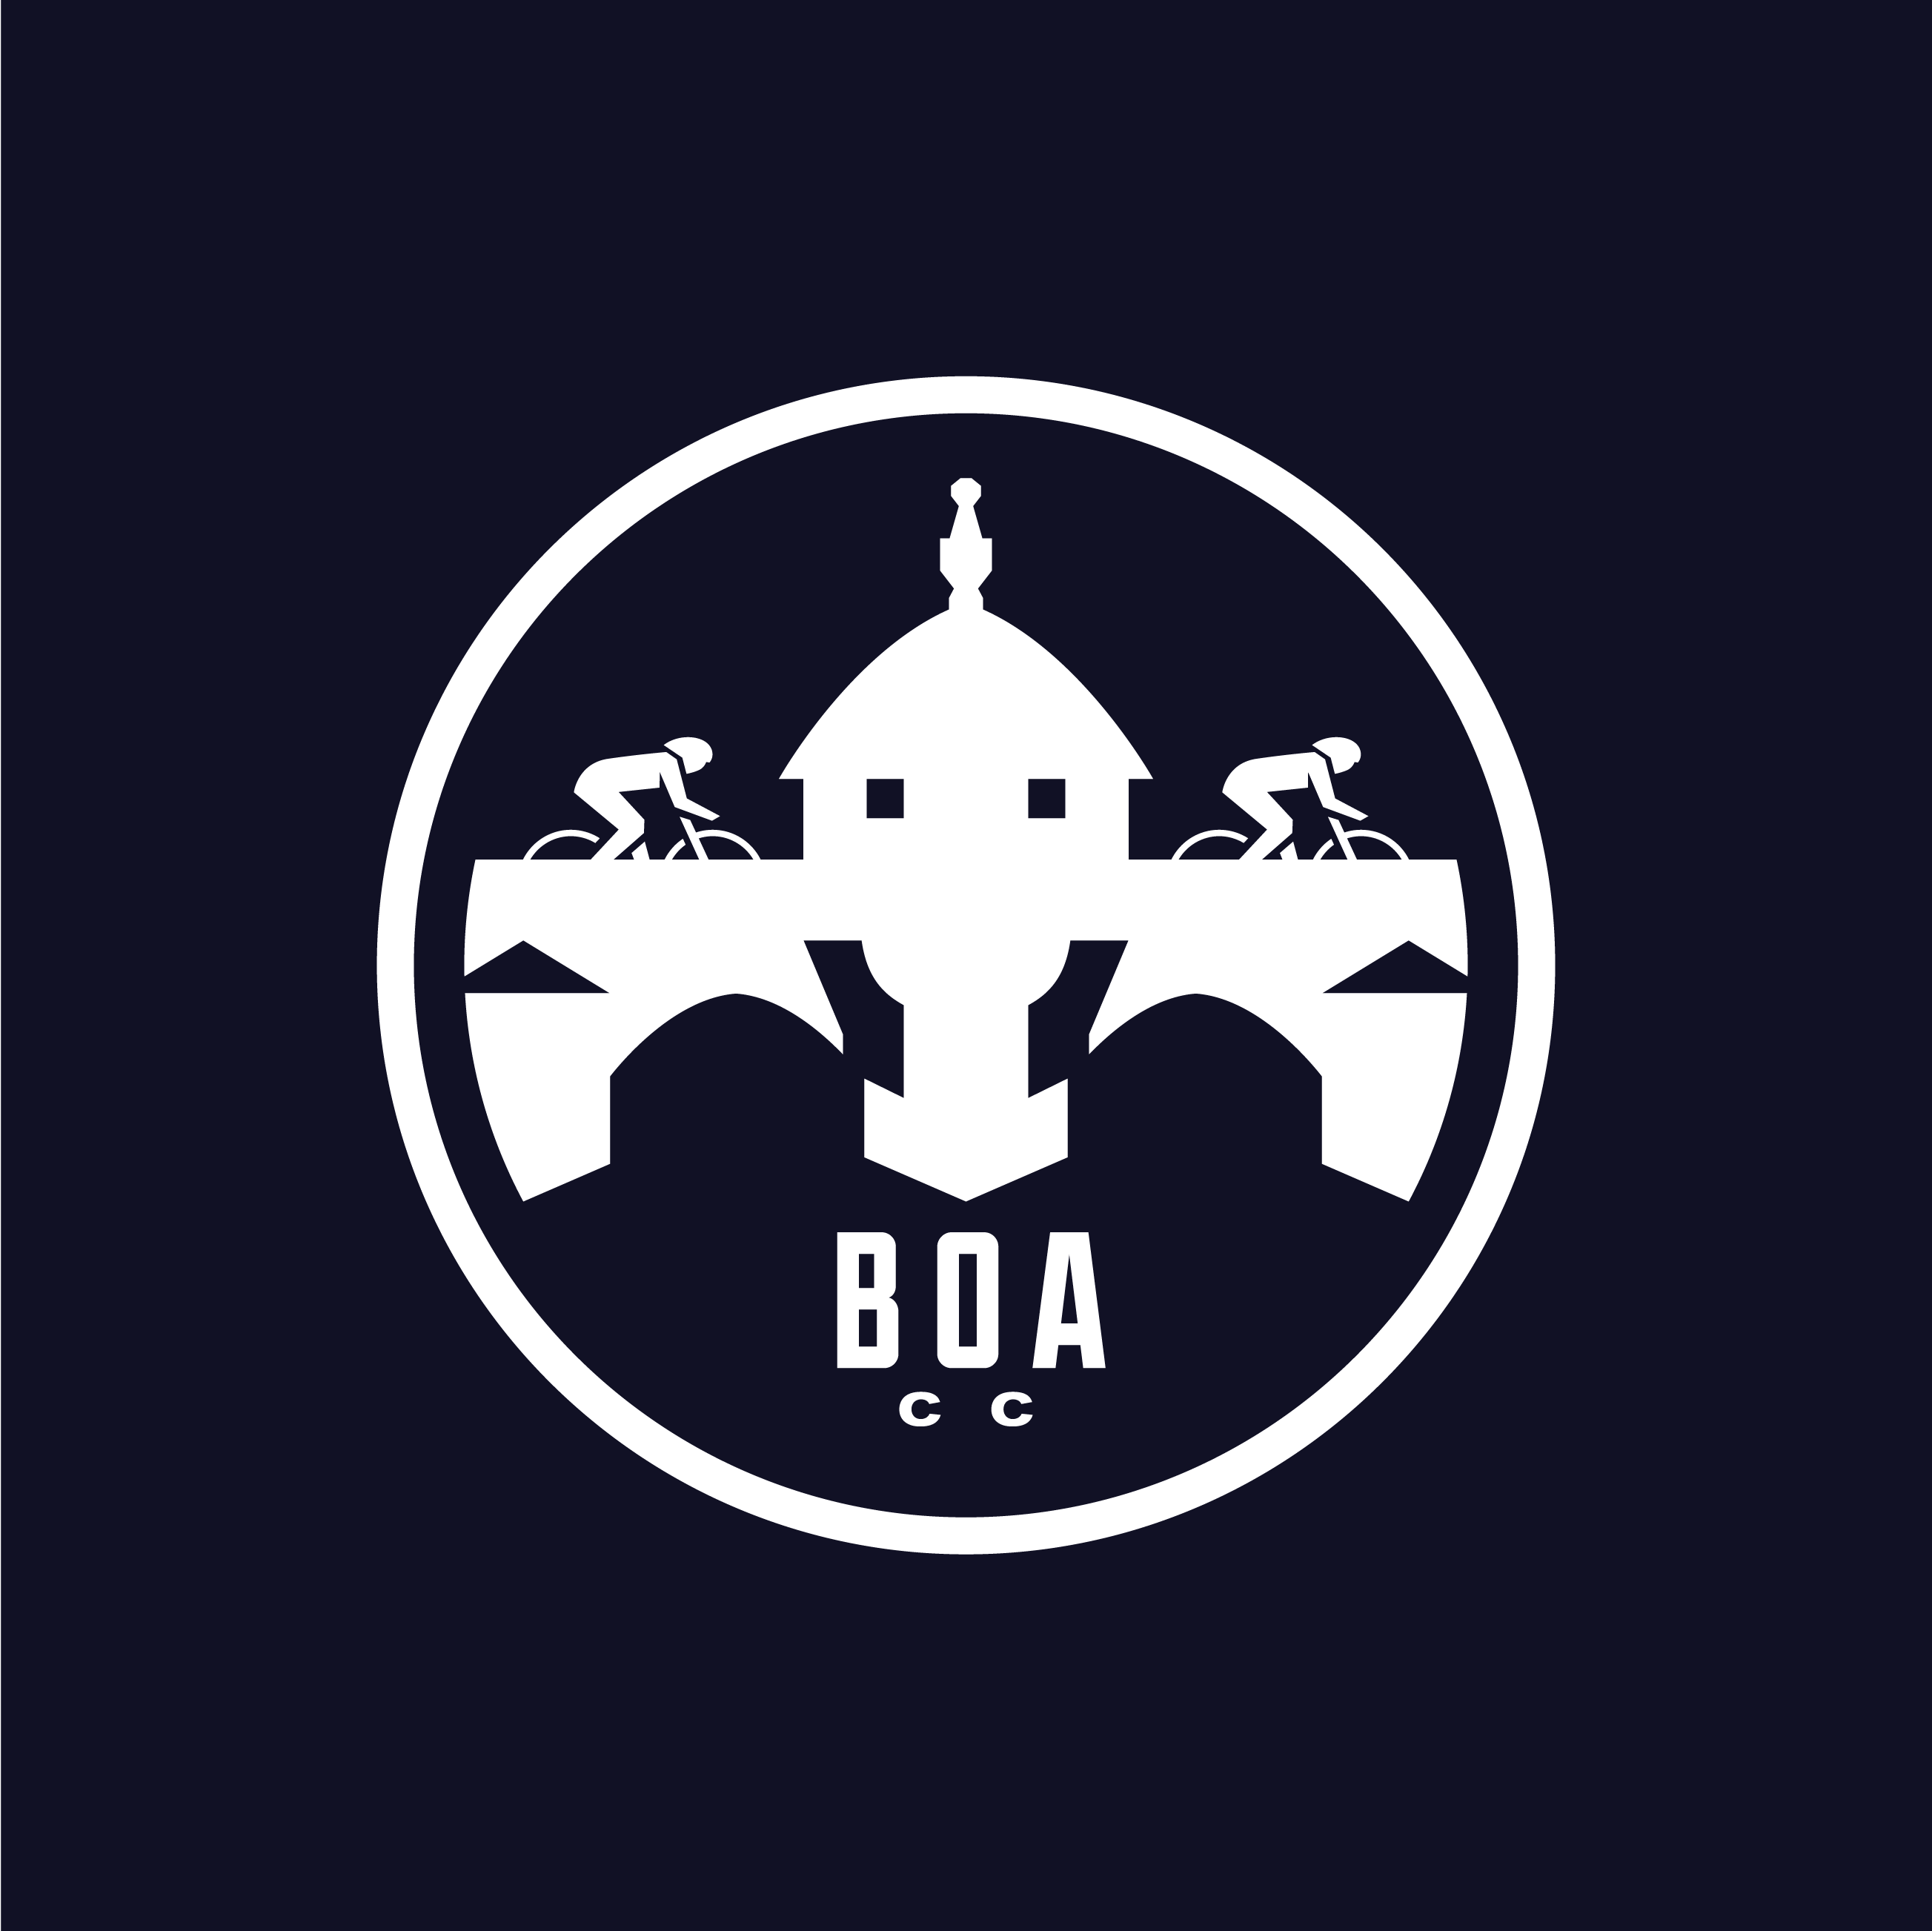 Club Image for BOA CC